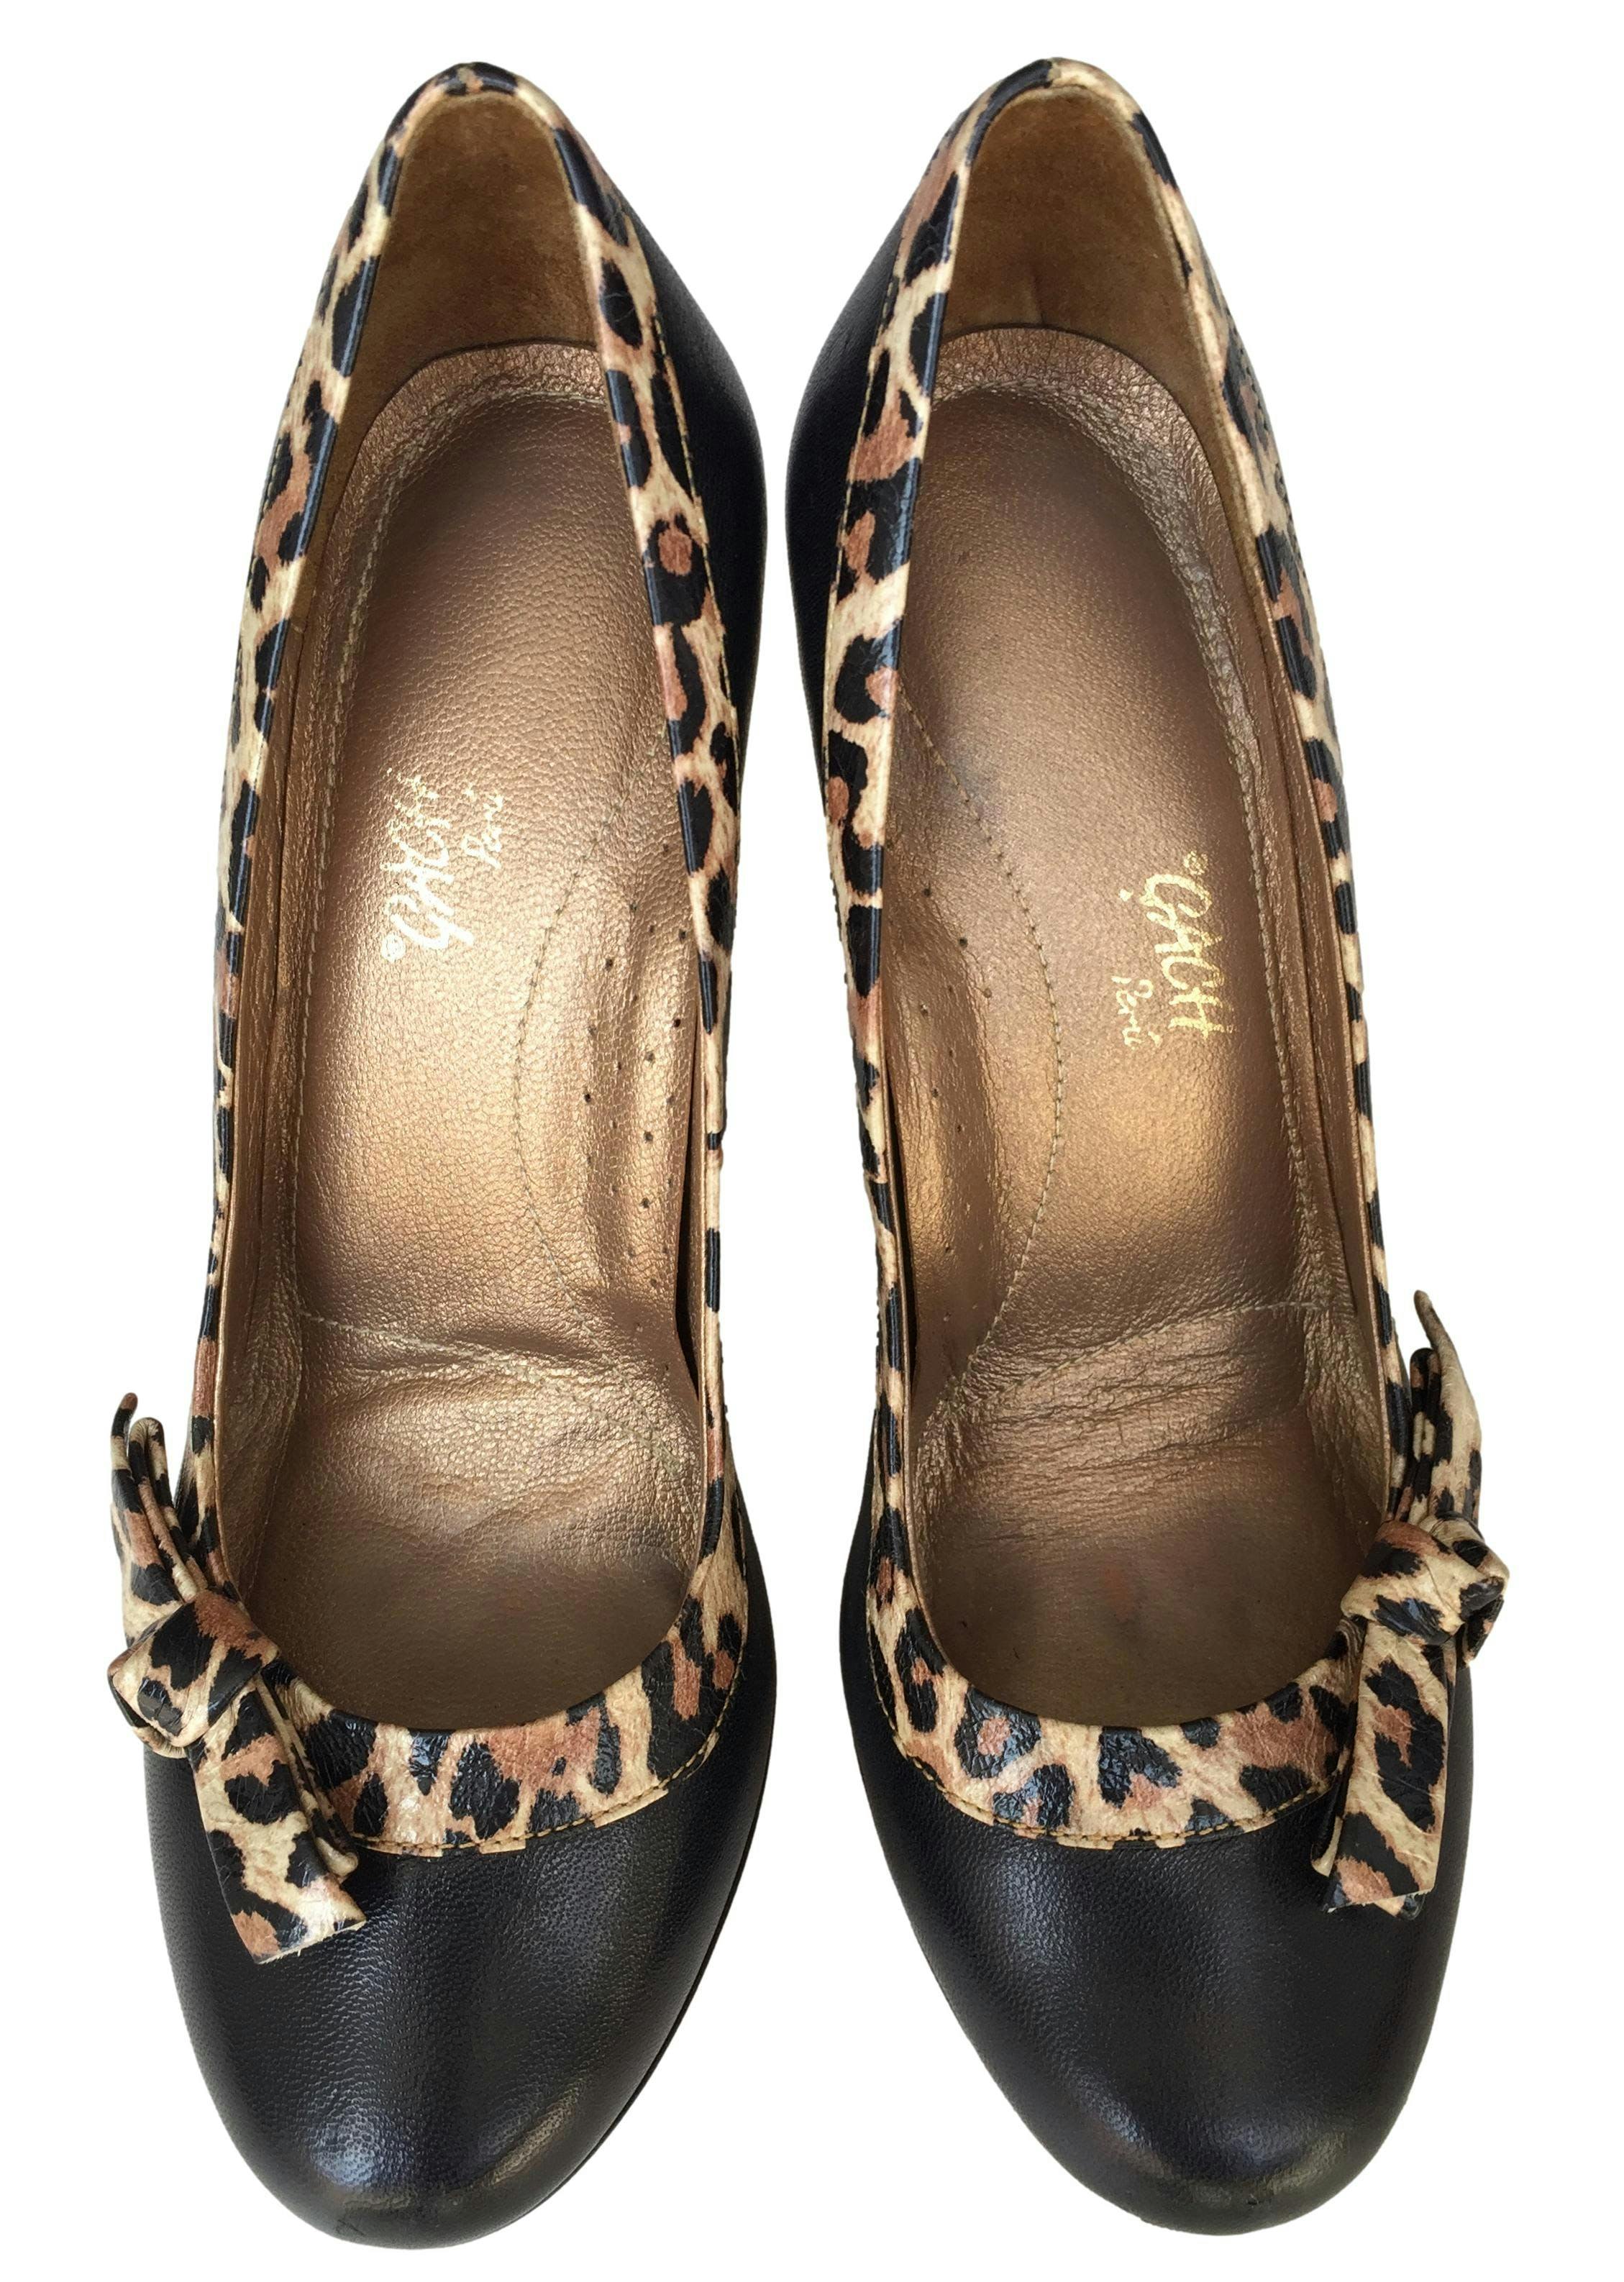 Zapatos Gatch de cuero negro con ribetes y lazo animal print, taco 12cm, plataforma 2.5cm. Estado 9/10. Precio original S/460.